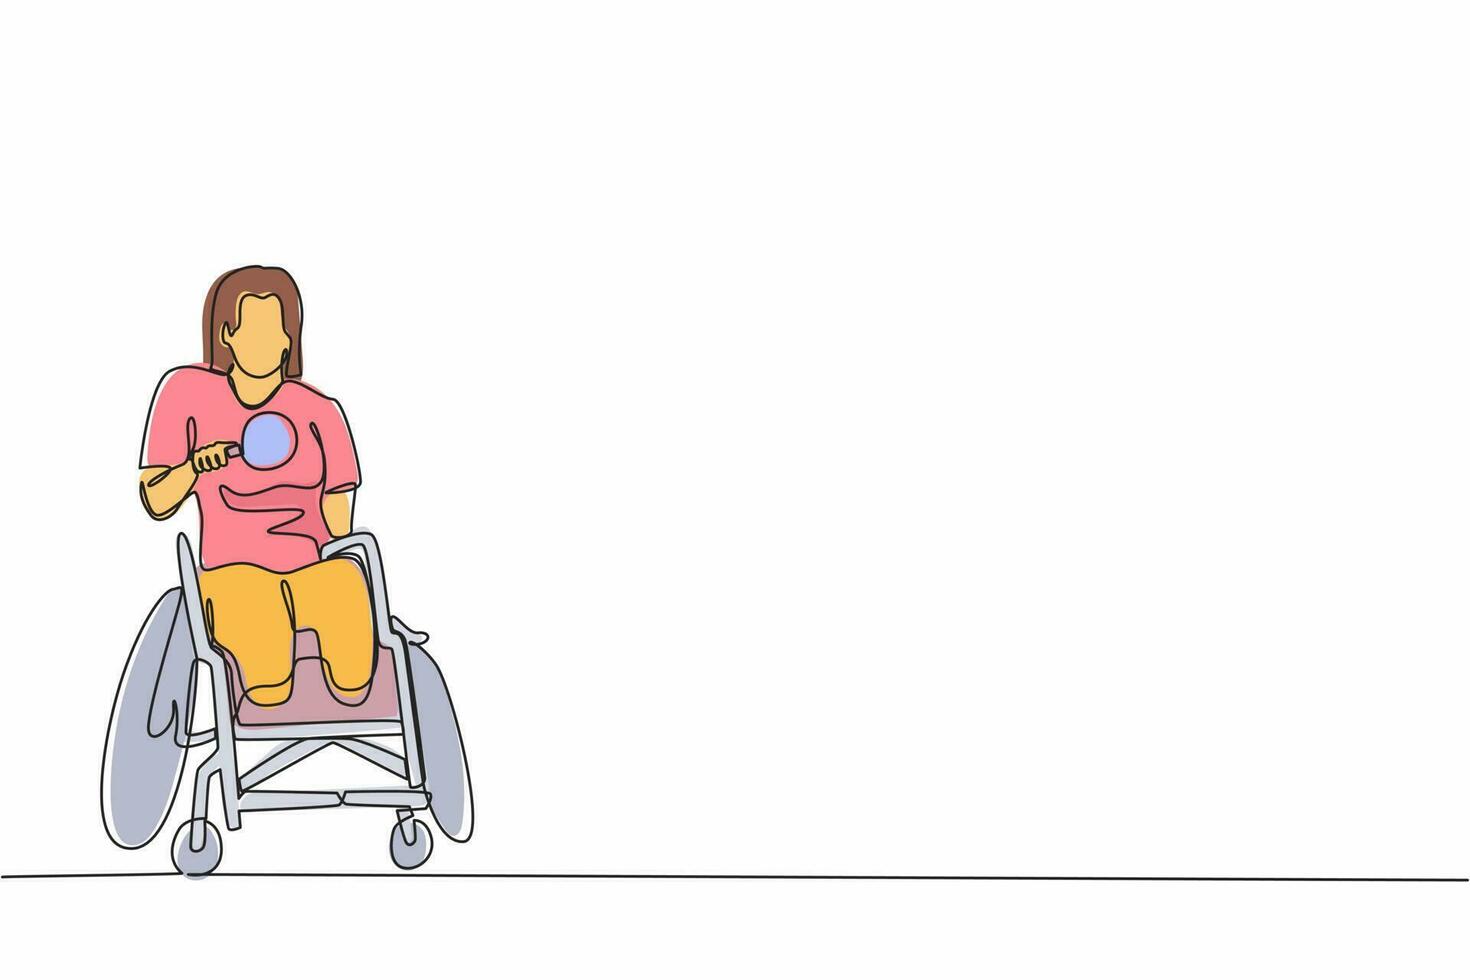 une seule ligne continue dessinant une sportive handicapée en fauteuil roulant jouant au tennis de table. championnat des jeux pour handicapés. passe-temps et intérêts des personnes handicapées. vecteur de conception graphique d'une ligne